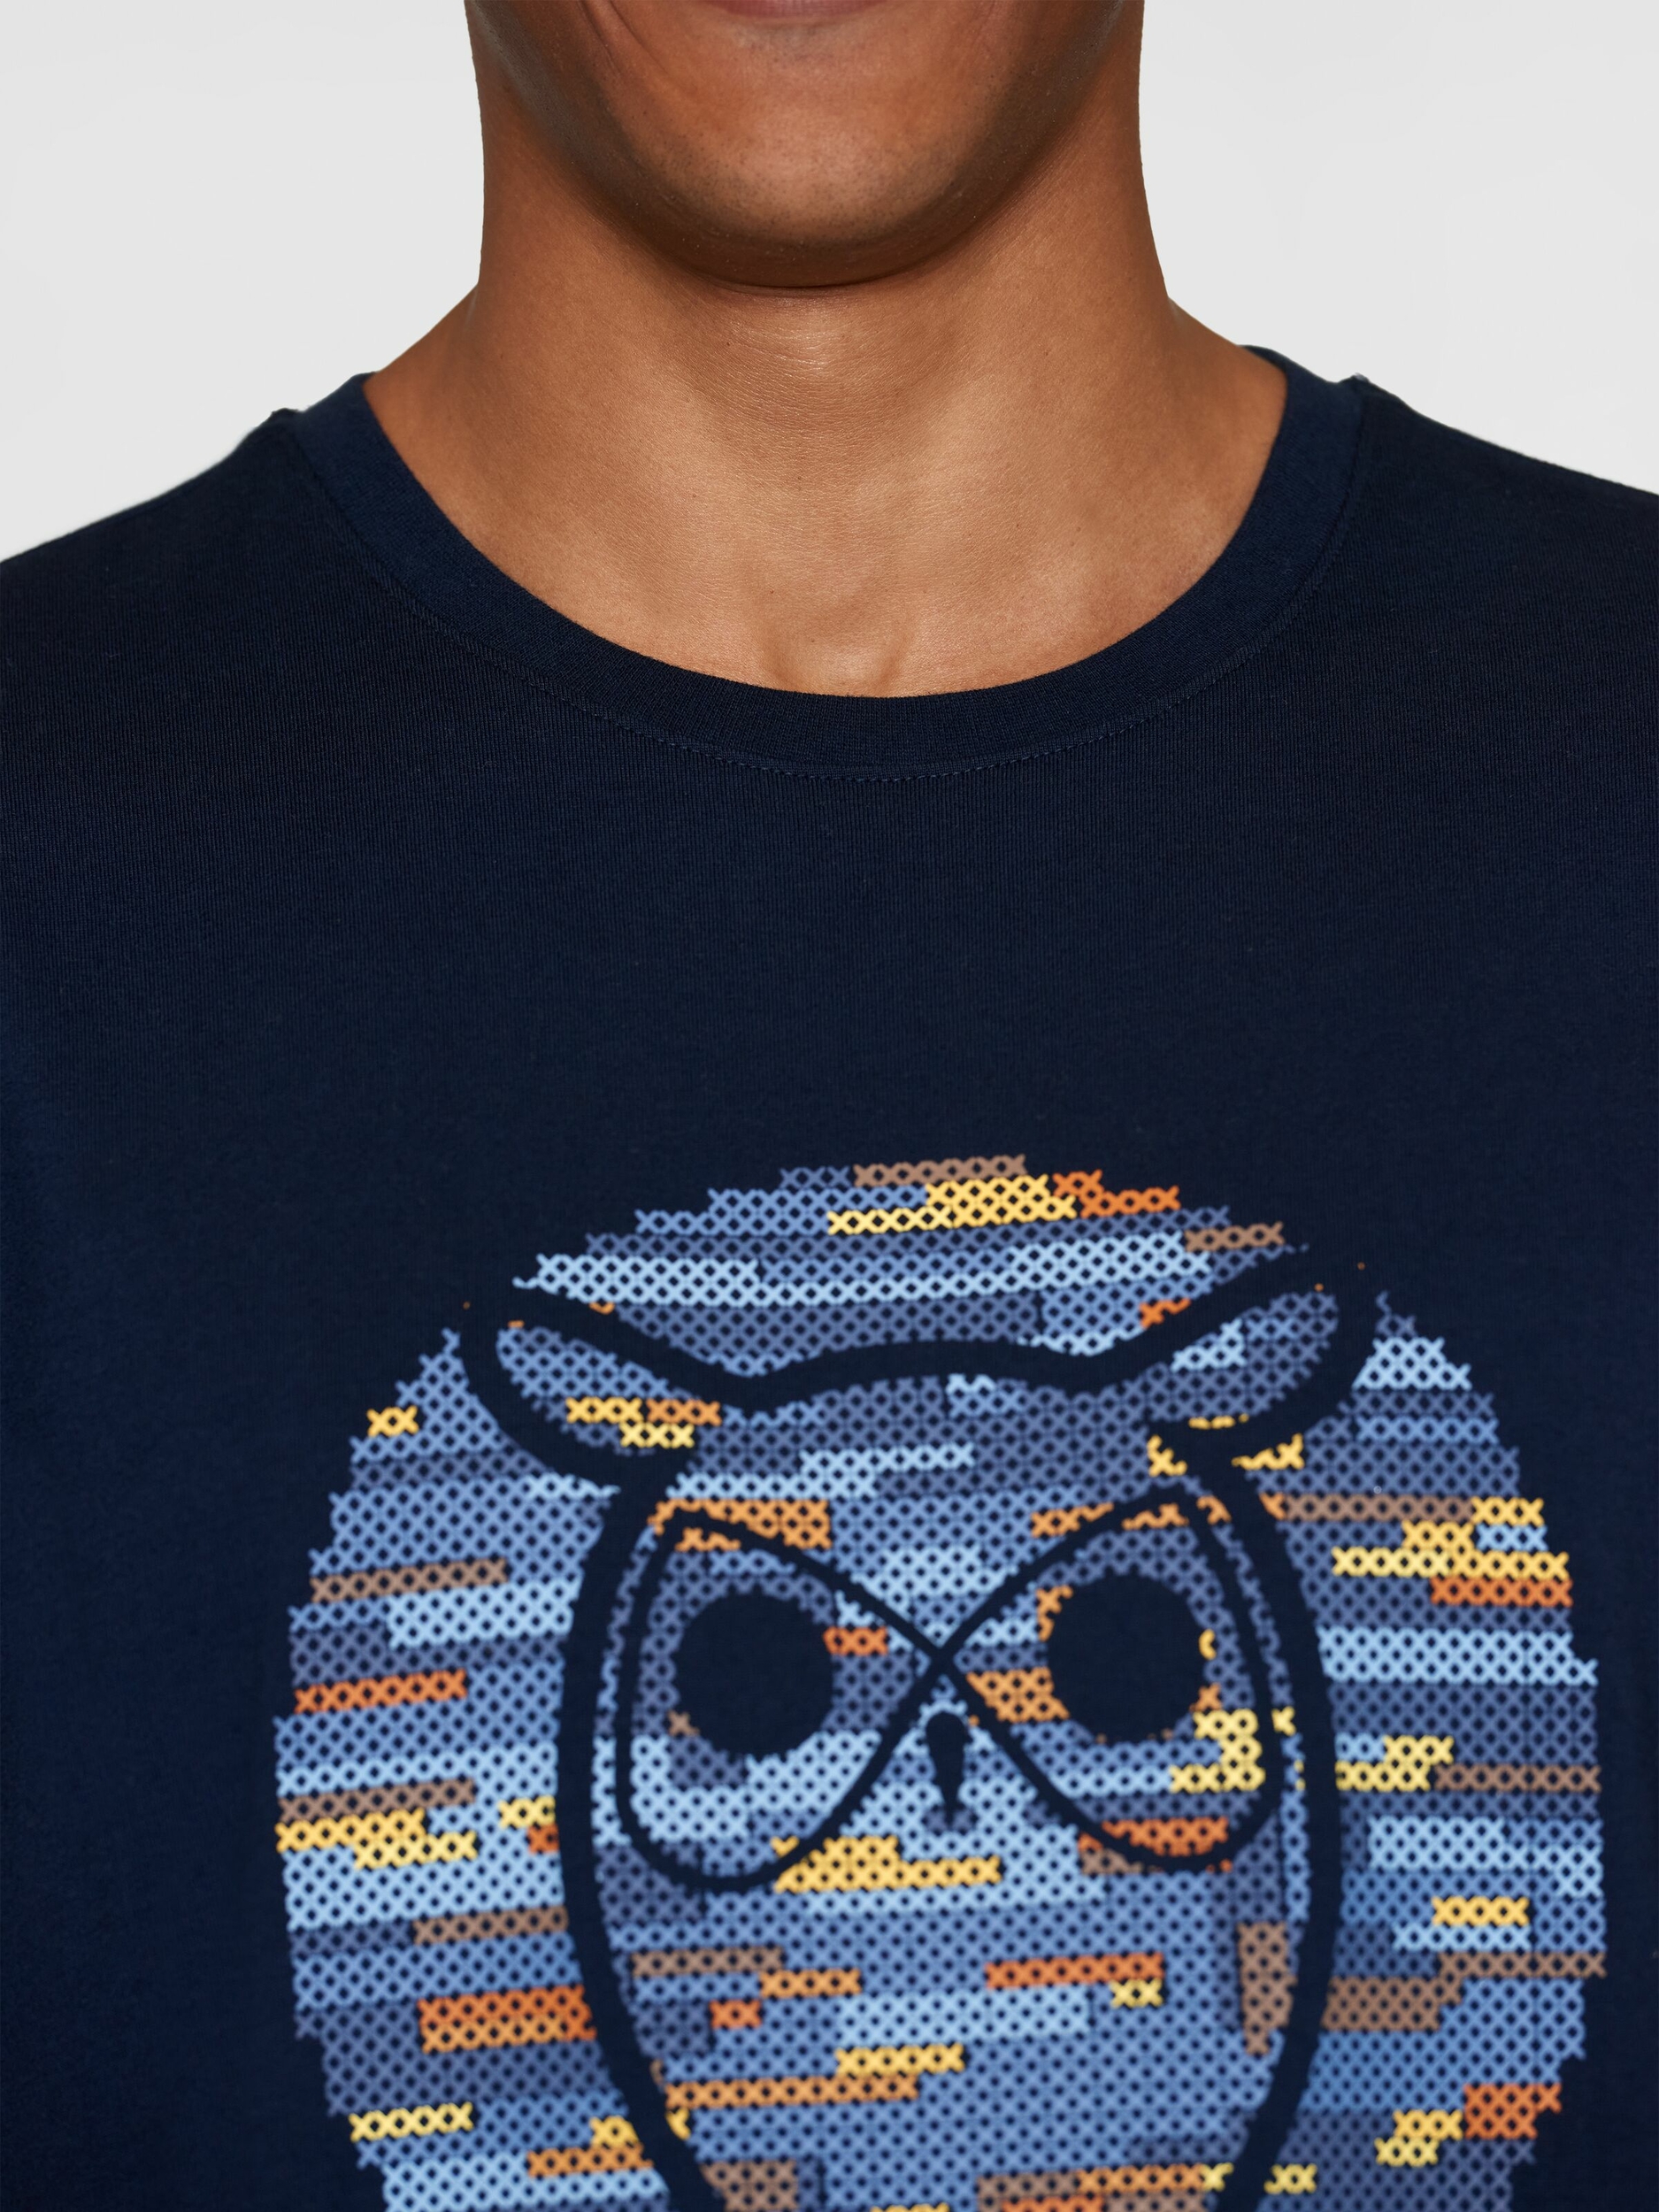 T-shirt Hibou cross stitch - bleu marine - coton biologique - Knowledge Cotton Apparel 04